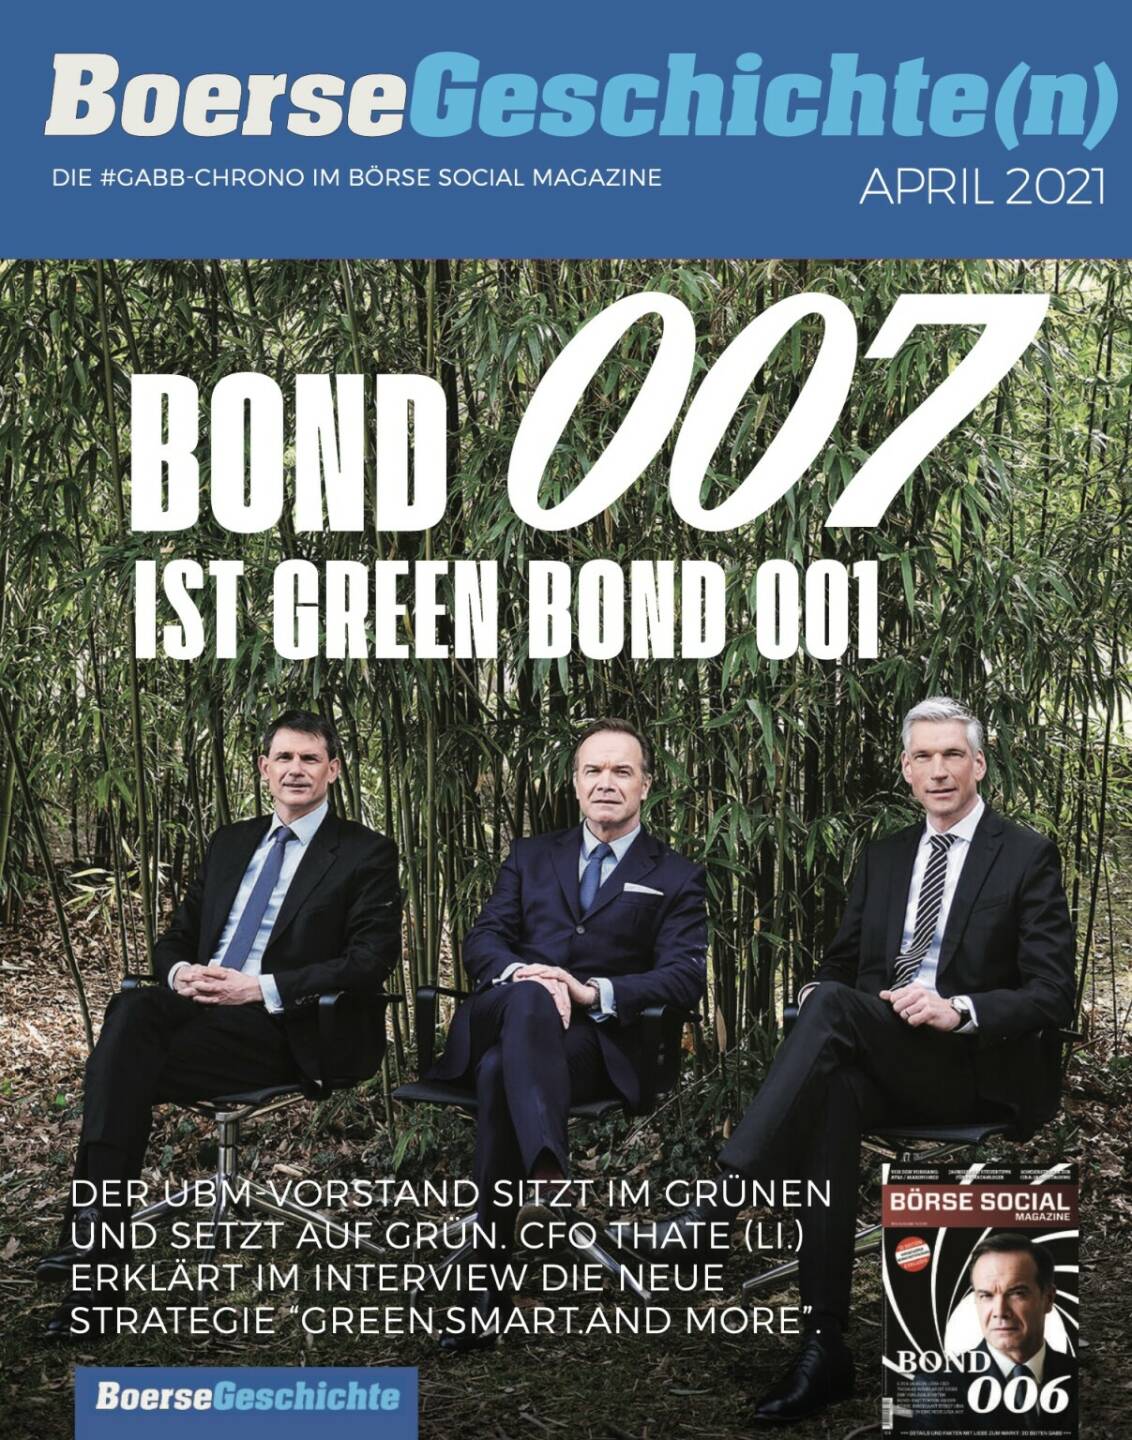 Bond 007 ist Green Bond 001 - Der UBM-Vorstand sitzt im Grünen und setzt auf grün. CFO Thate (Li.)  erklärt im Interview die neue Strategie green.smart.and more.